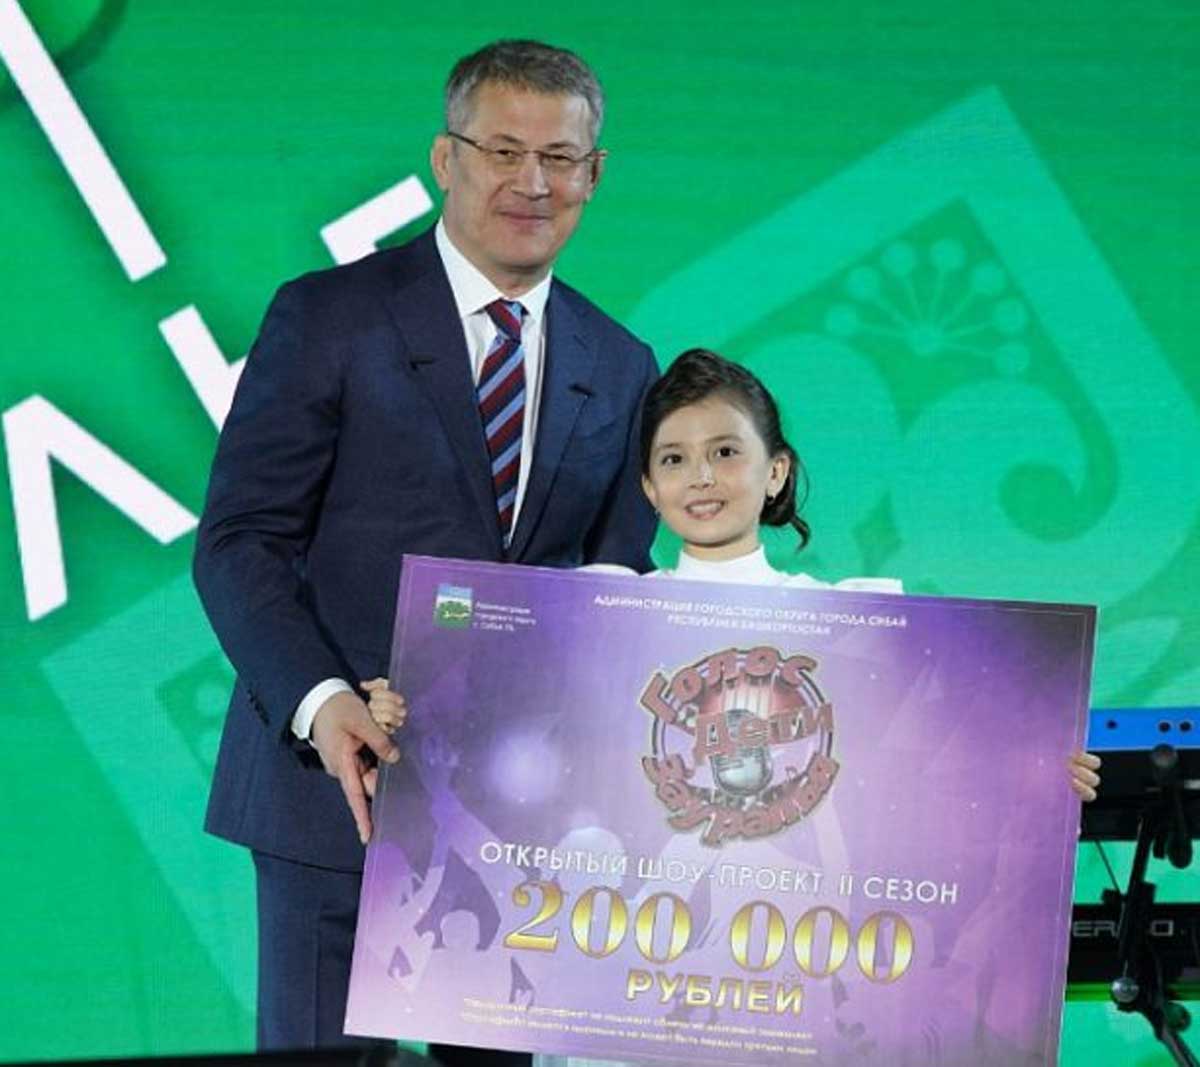 Талантливая девочка из Башкирии получила из рук главы республики сертификат на 200 тысяч рублей